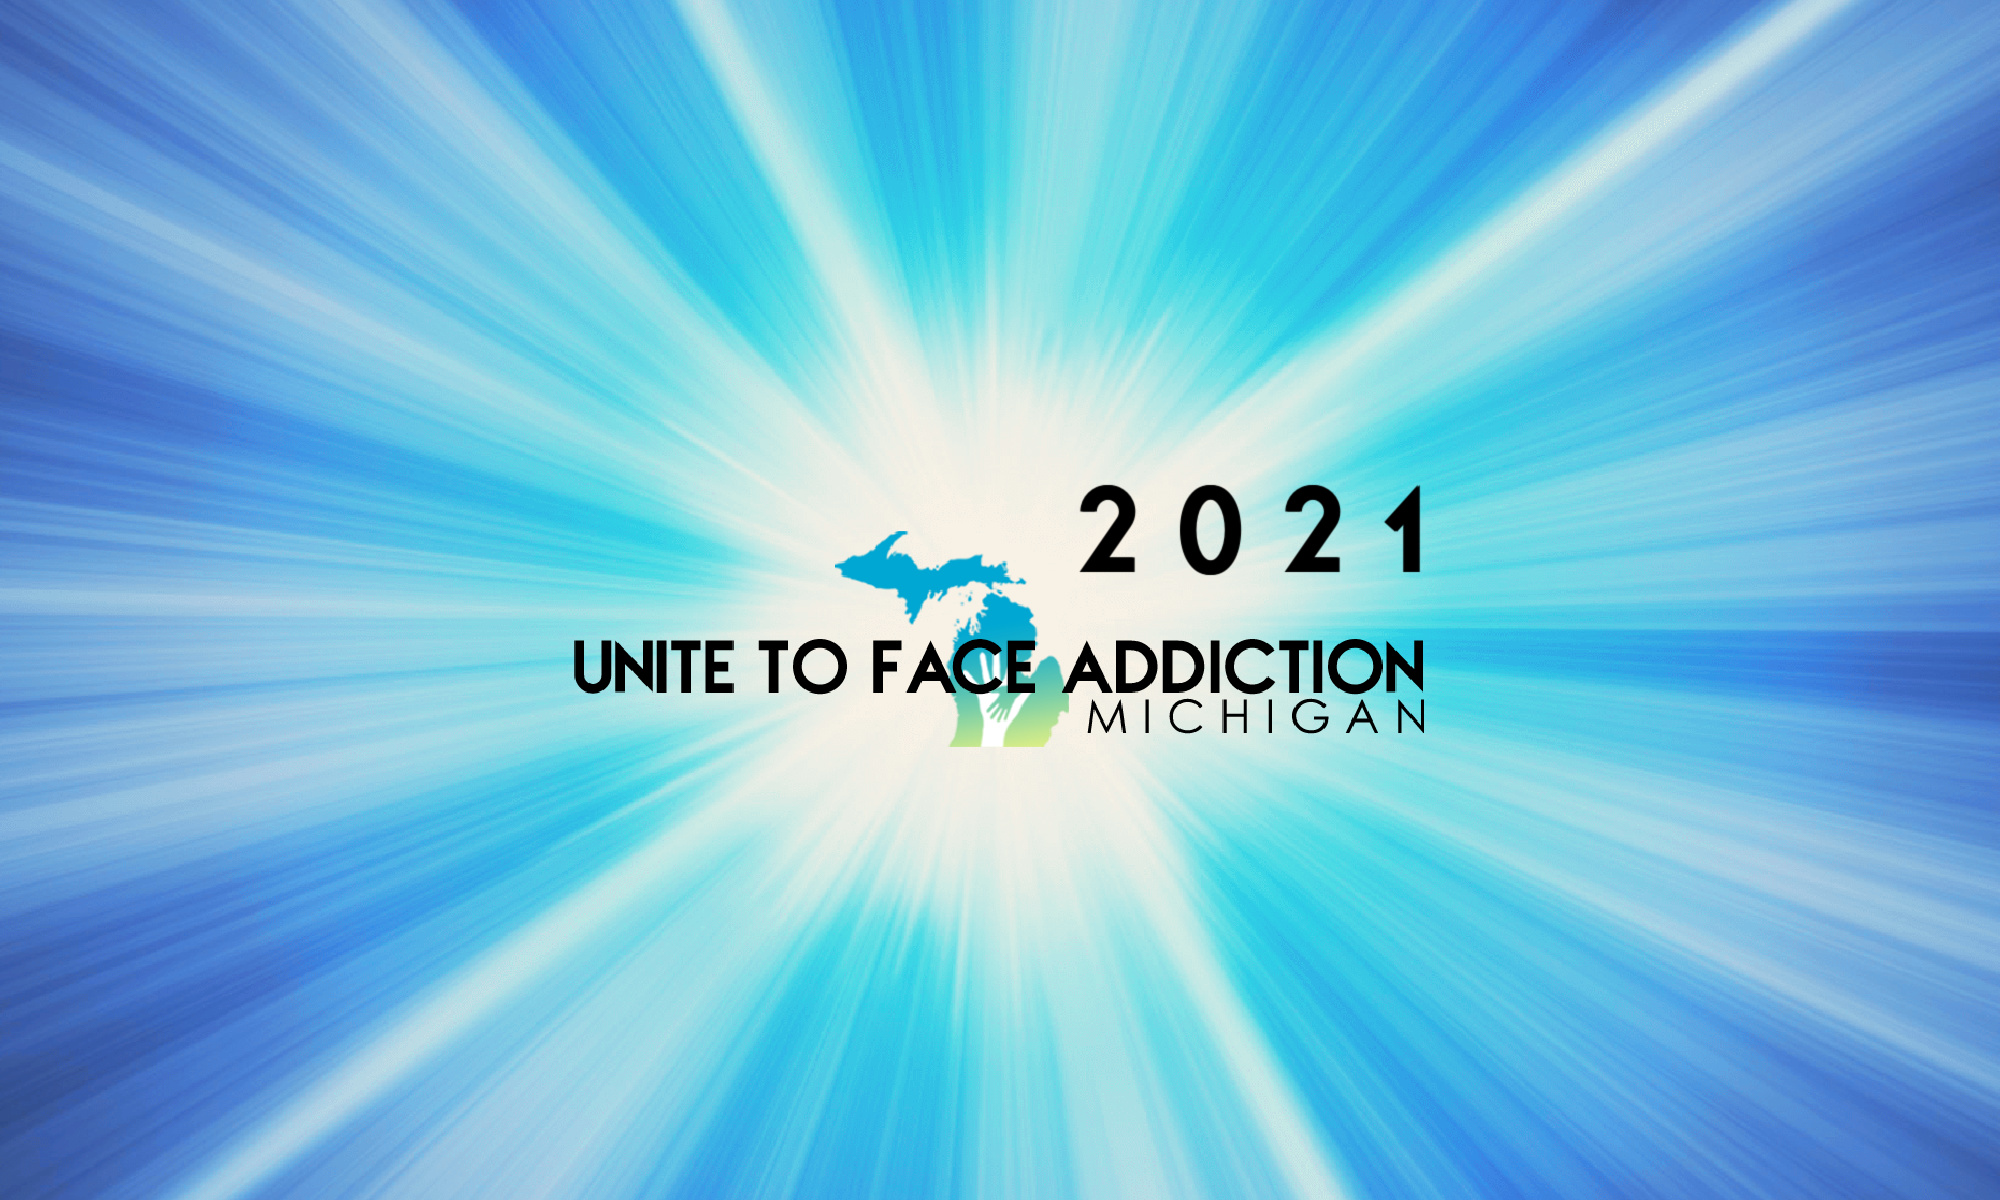 Unite to Face Addiction Michigan